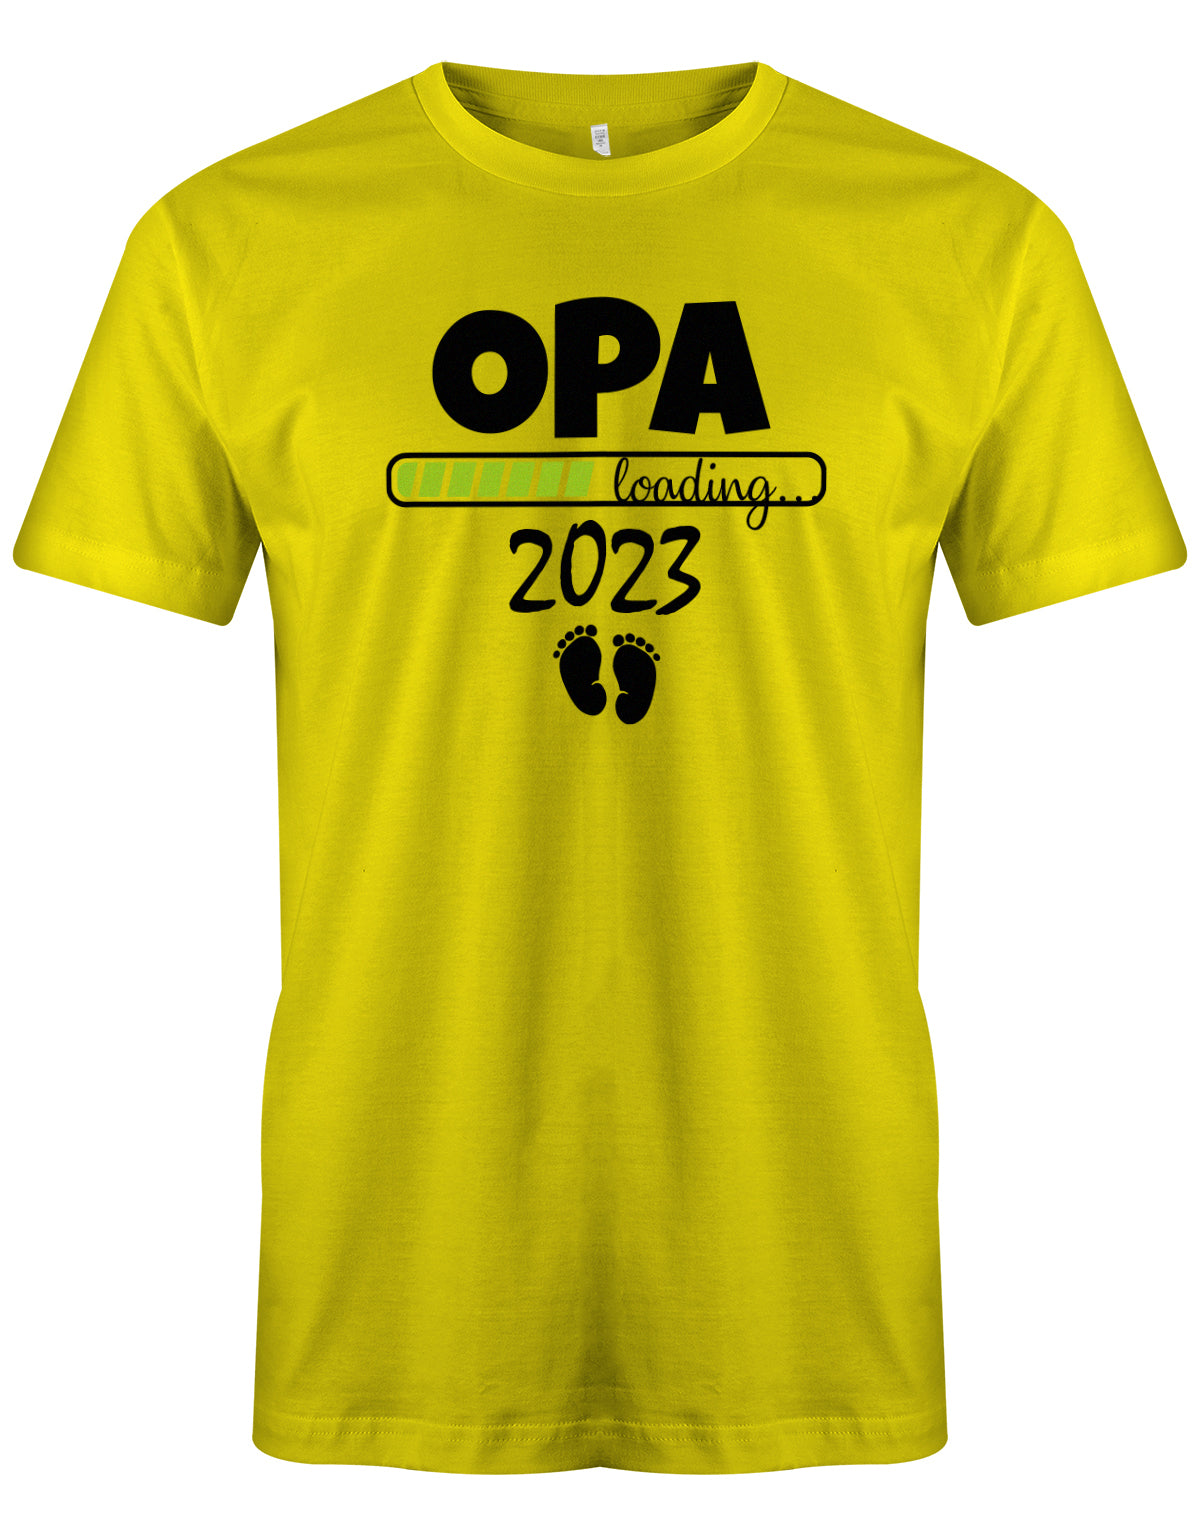 Opa T-Shirt Spruch für werdenden Opa - Opa Loading 2023 Balken lädt. Fußabdrücke Baby. Gelb